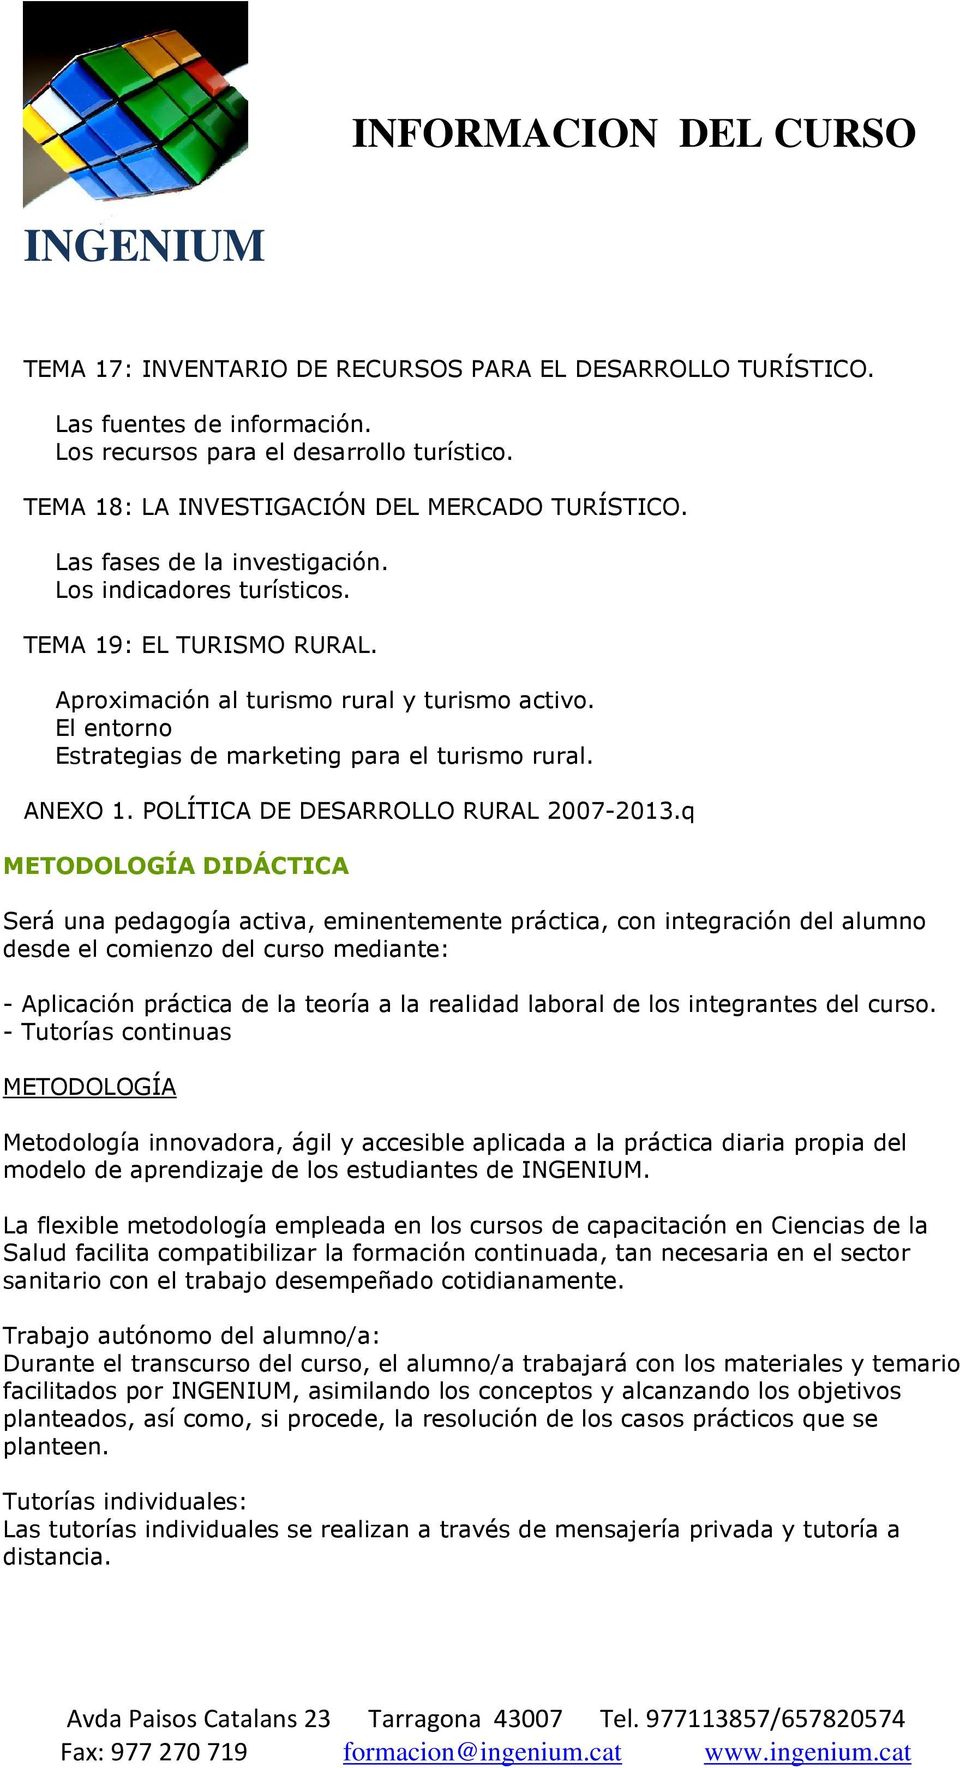 ANEXO 1. POLÍTICA DE DESARROLLO RURAL 2007-2013.